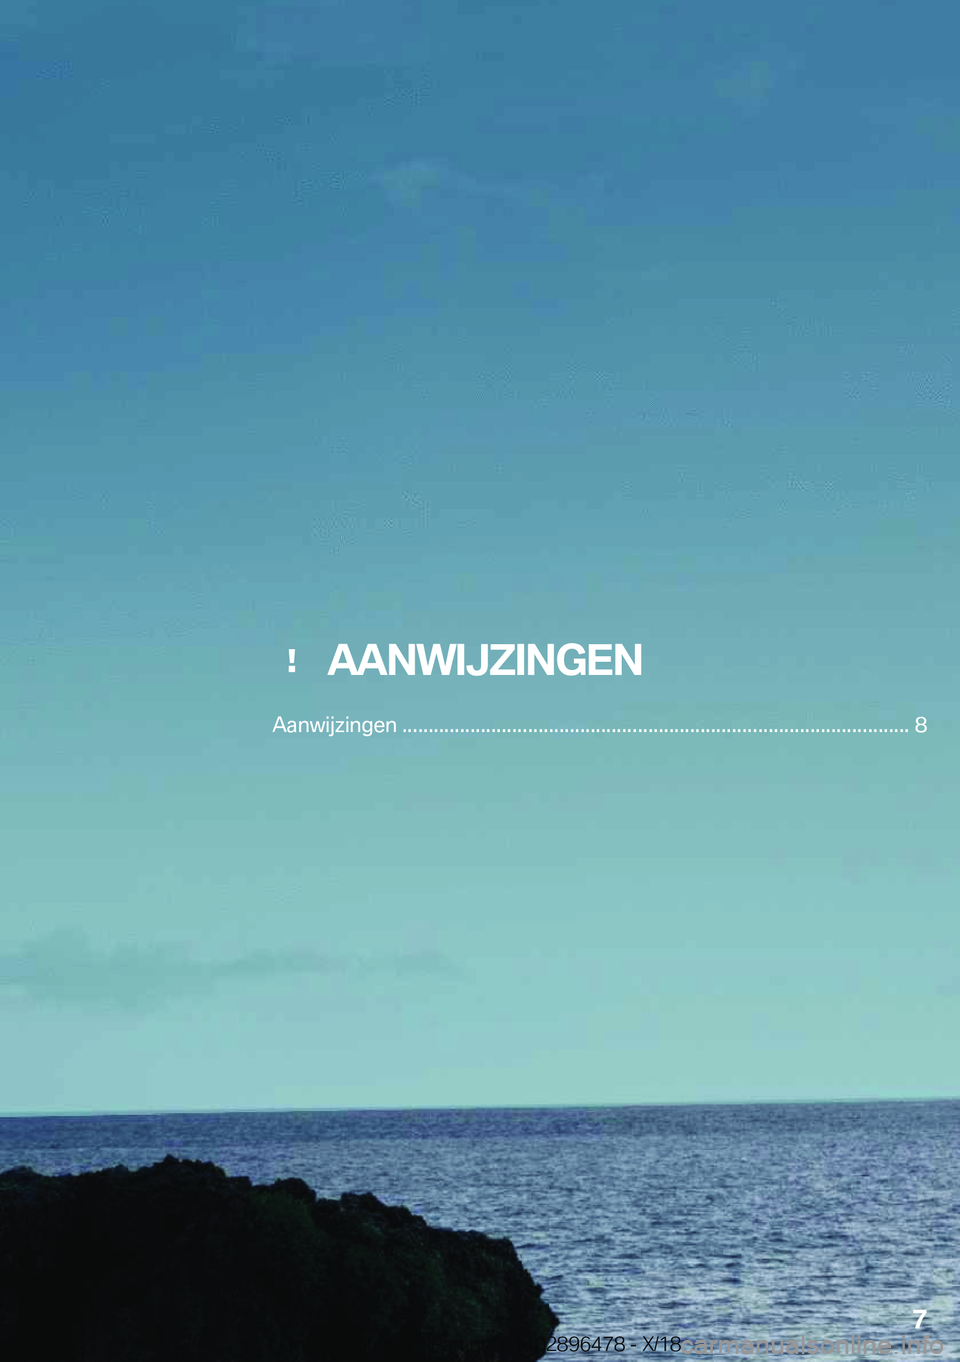 BMW X1 2019  Instructieboekjes (in Dutch) ���A�A�N�W�I�J�Z�I�N�G�E�N
�A�a�n�w�i�j�z�i�n�g�e�n��������������������������������������������������������������������������